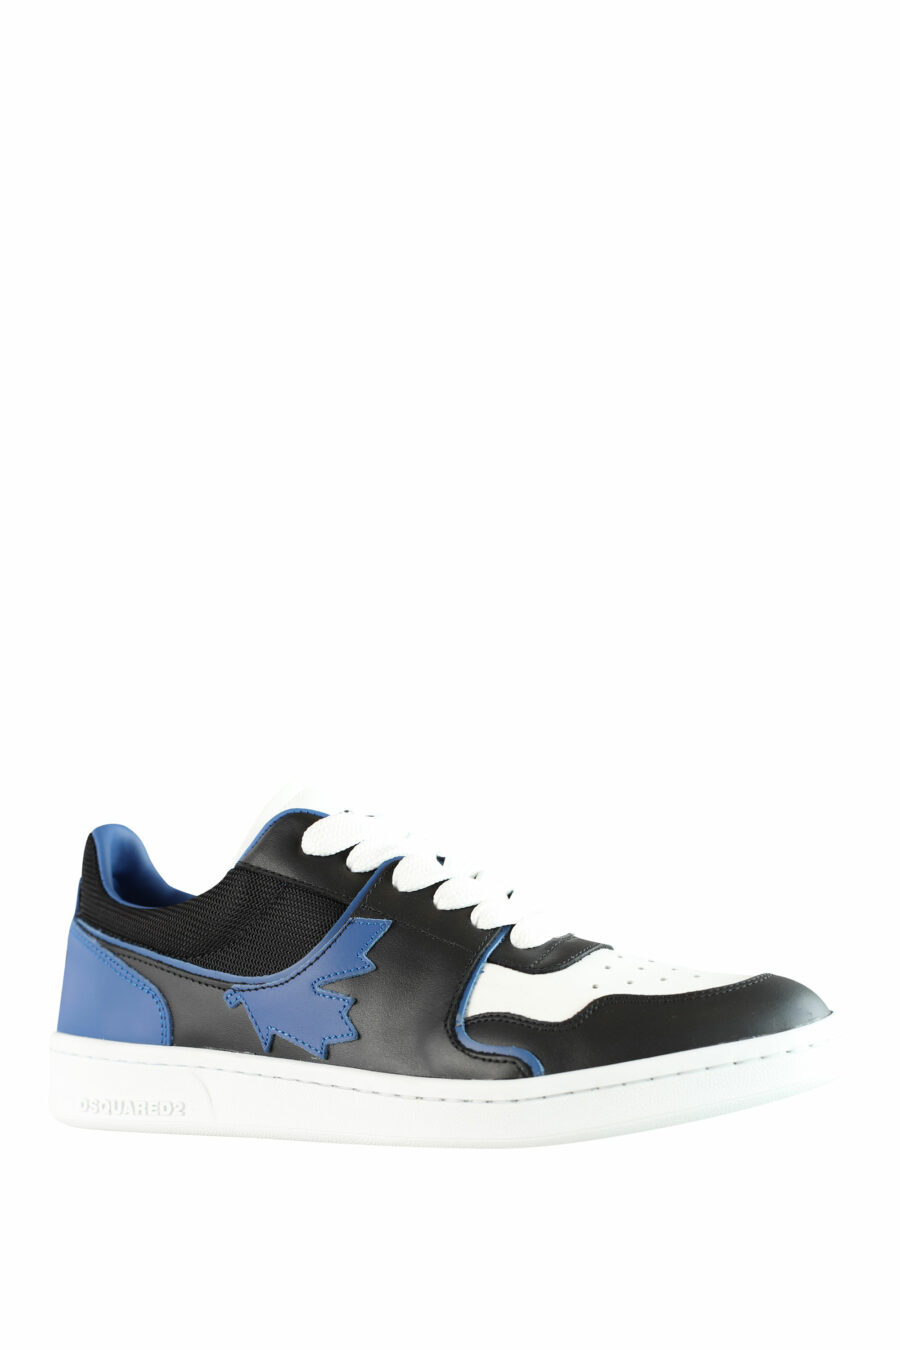 Zapatillas bicolor negras y azules "boxer" con detalles en blanco - IMG 1547